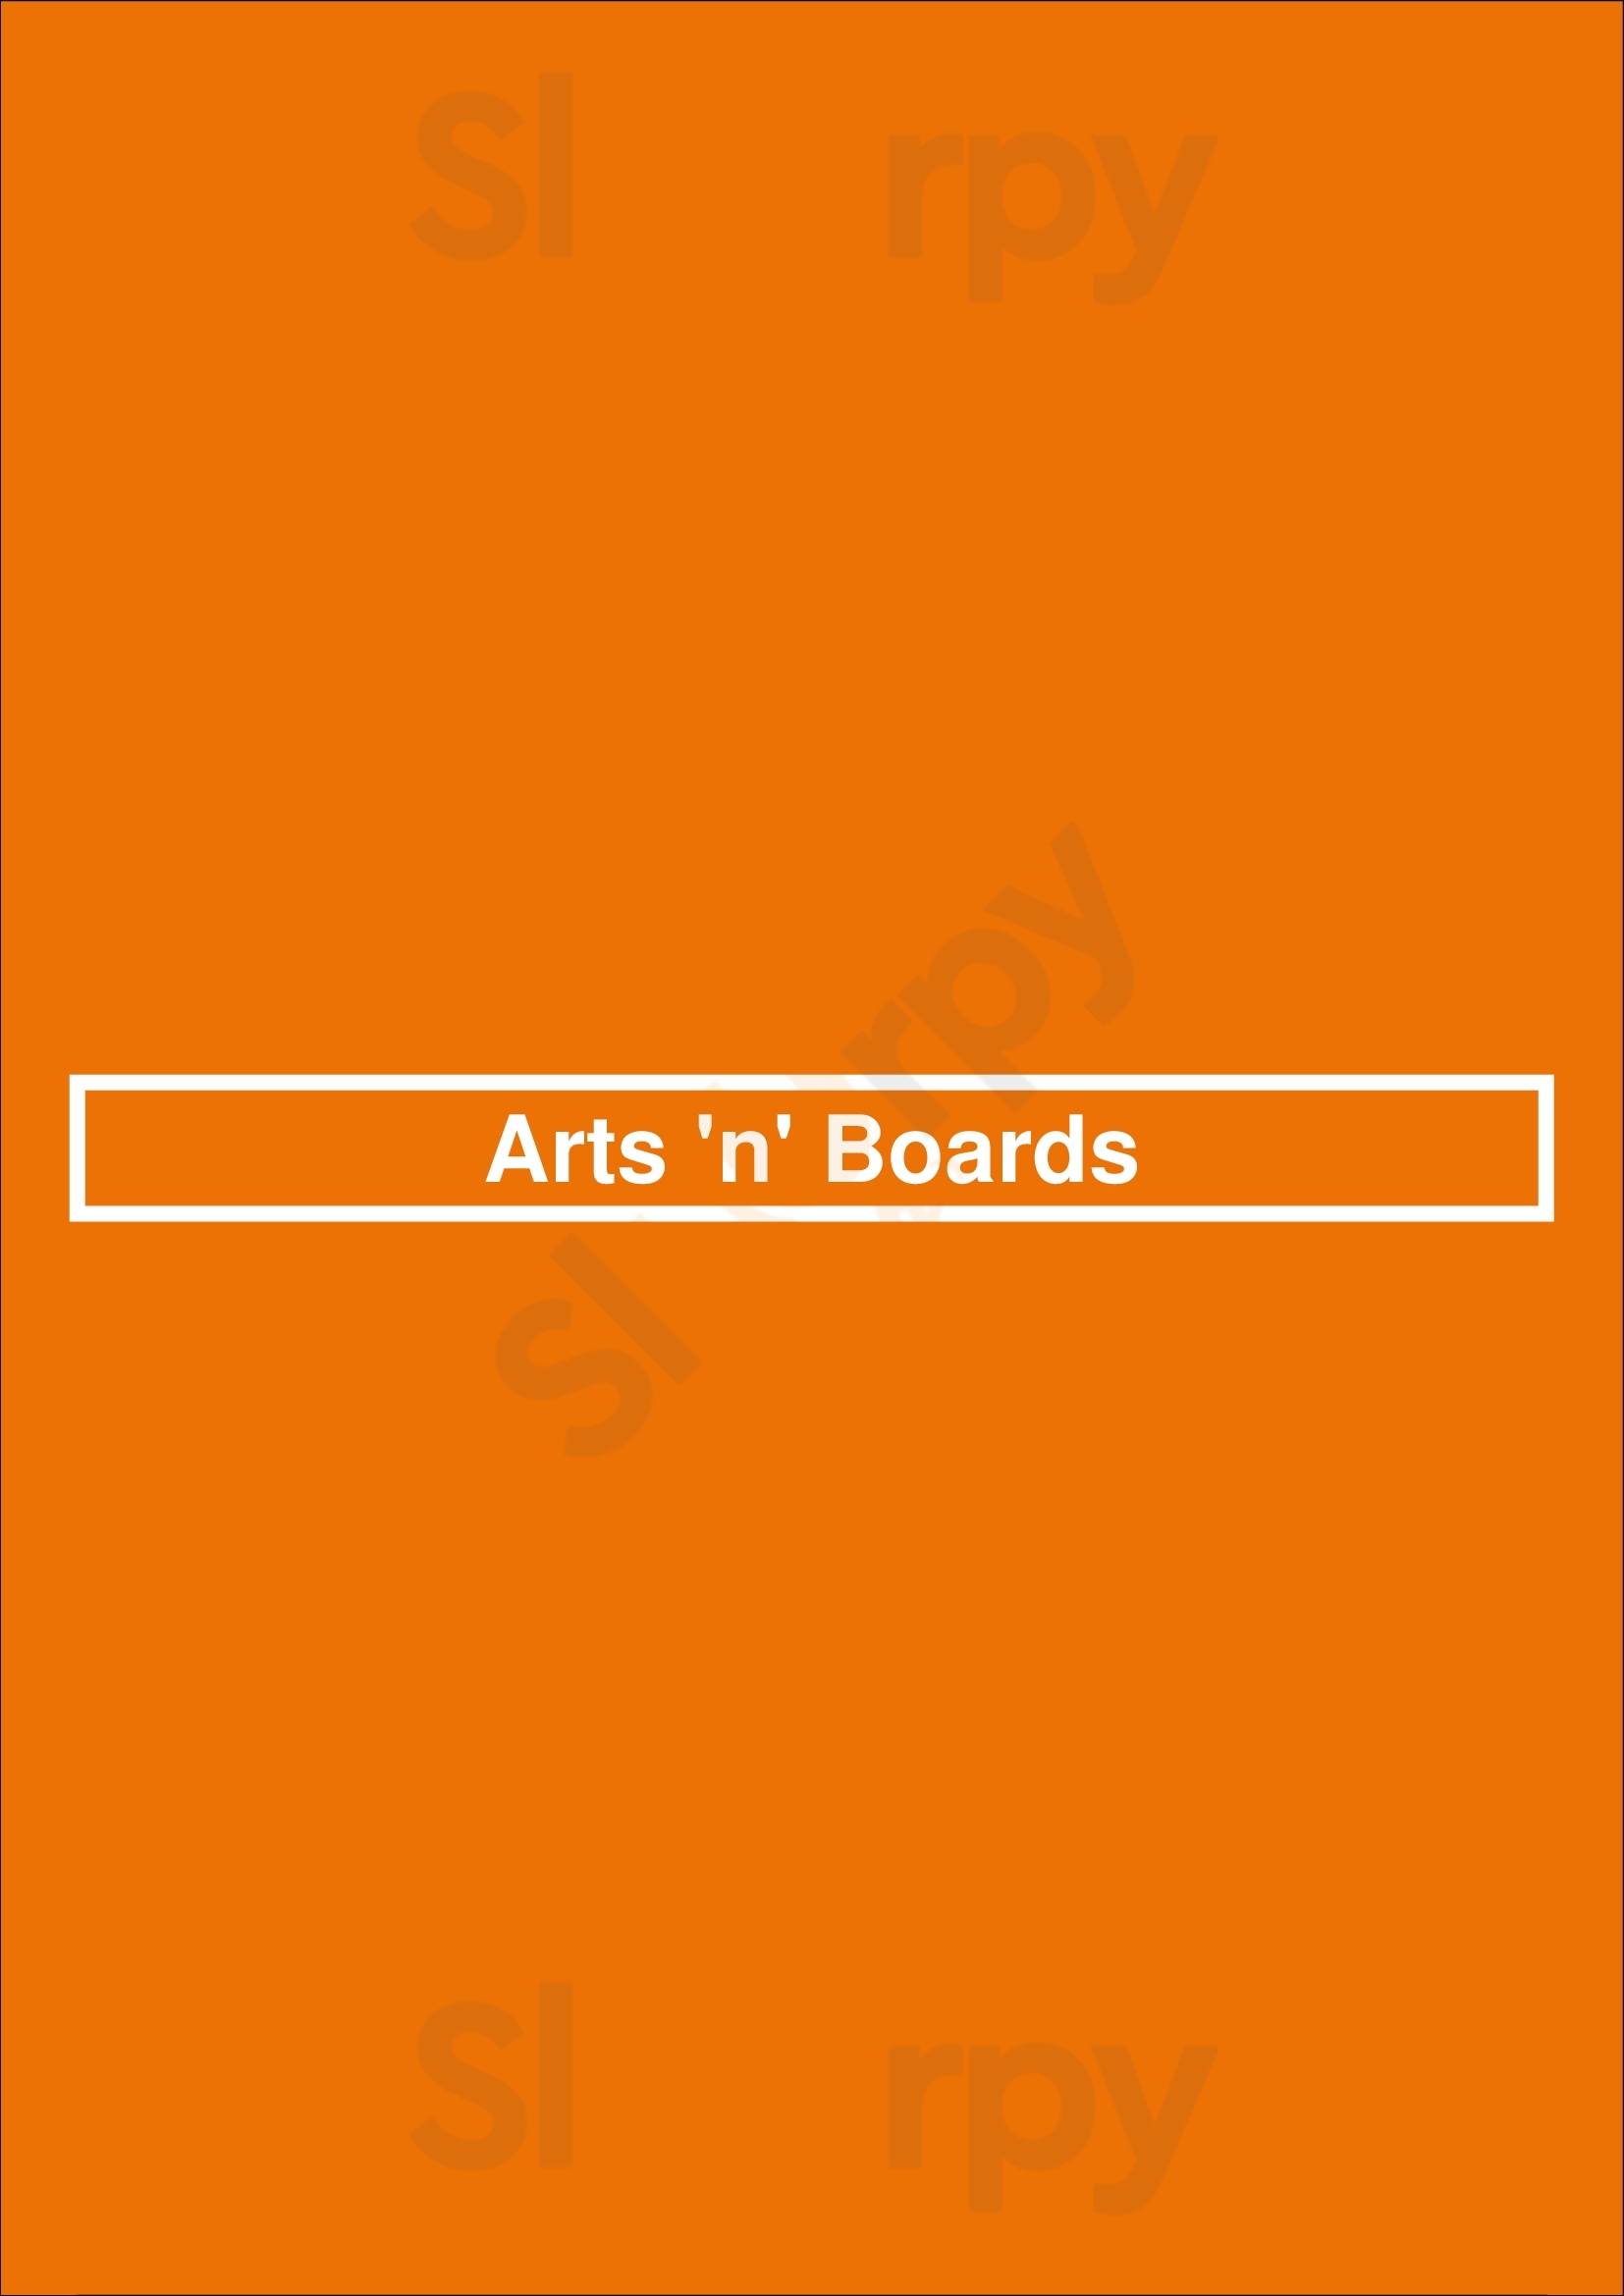 Arts 'n' Boards München Menu - 1